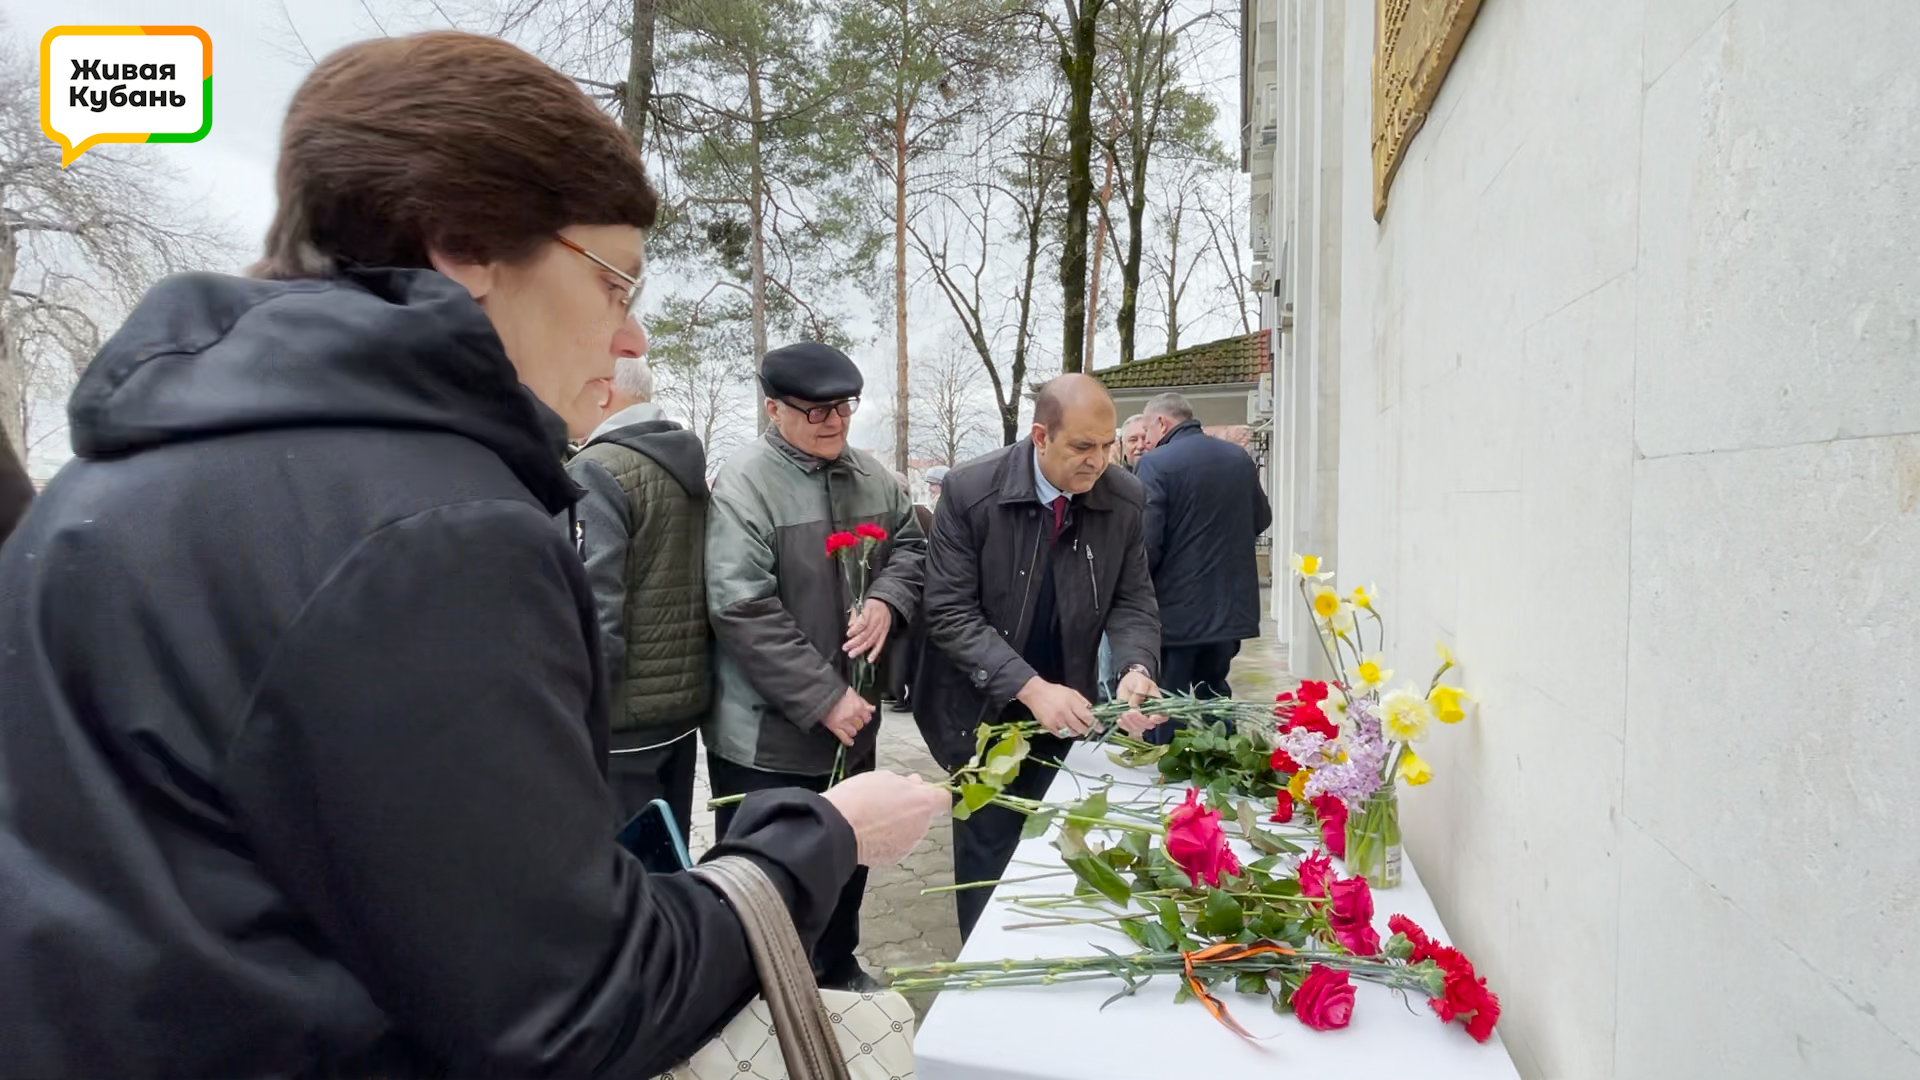 Неизвестное об известном: Юрий Гагарин проходил тренировку в Краснодаре